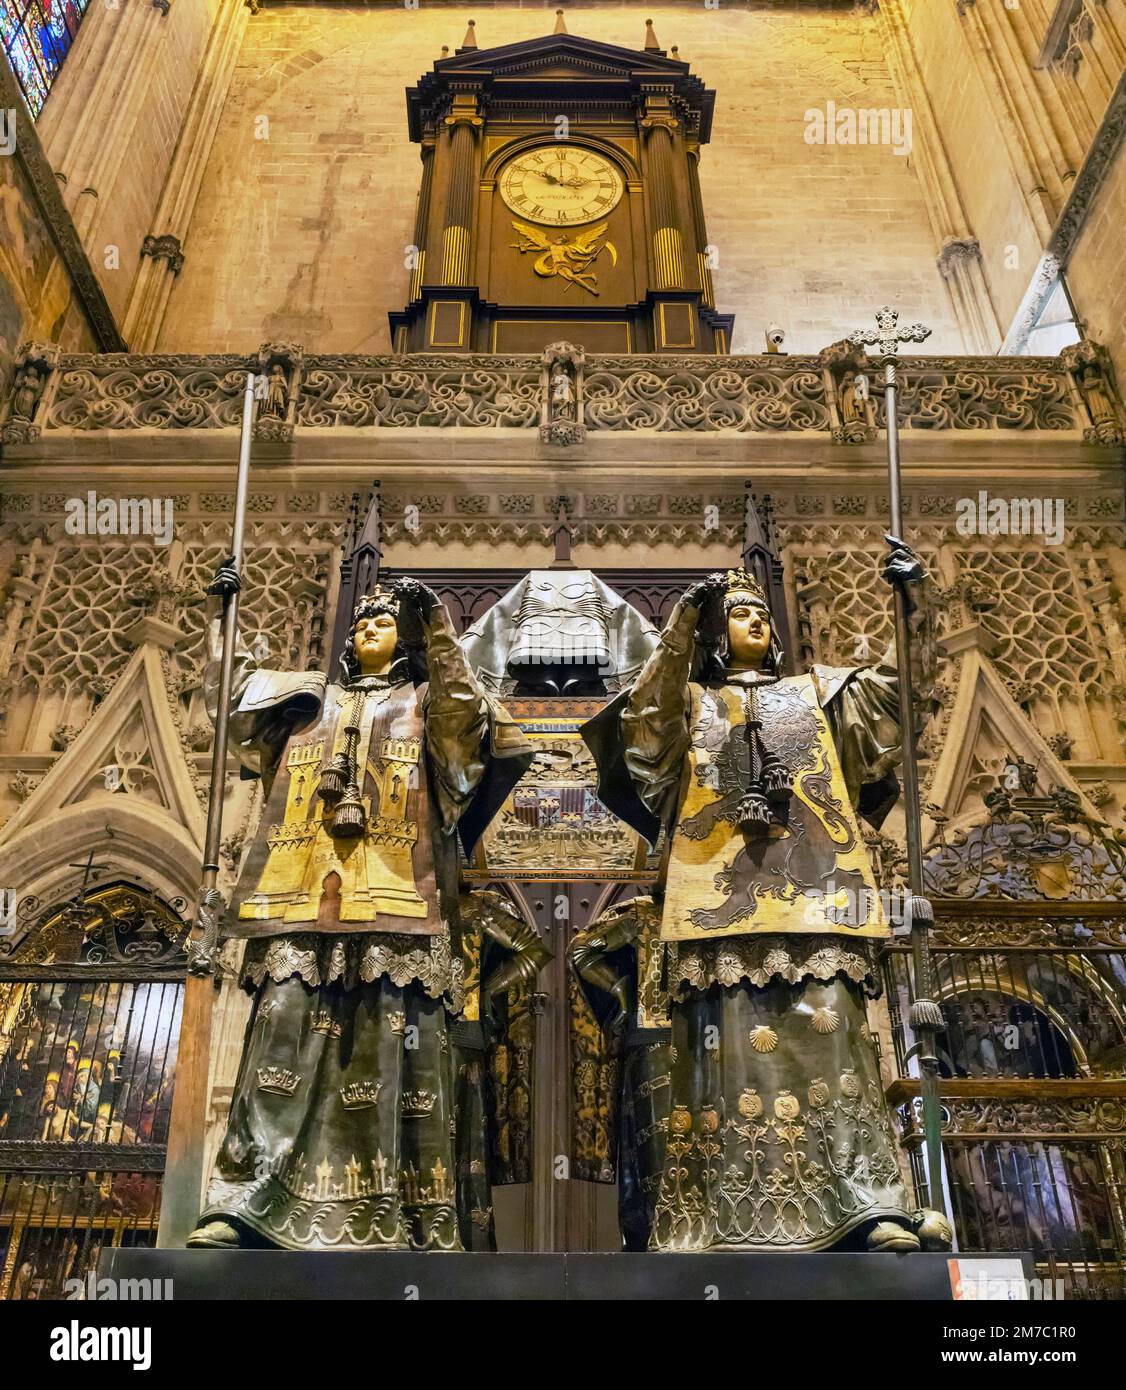 La tomba dell'esploratore Cristoforo Colombo nella cattedrale, Siviglia, Provincia di Siviglia, Andalusia, Spagna. La Cattedrale, Alcázar e Archivio de Indias Foto Stock